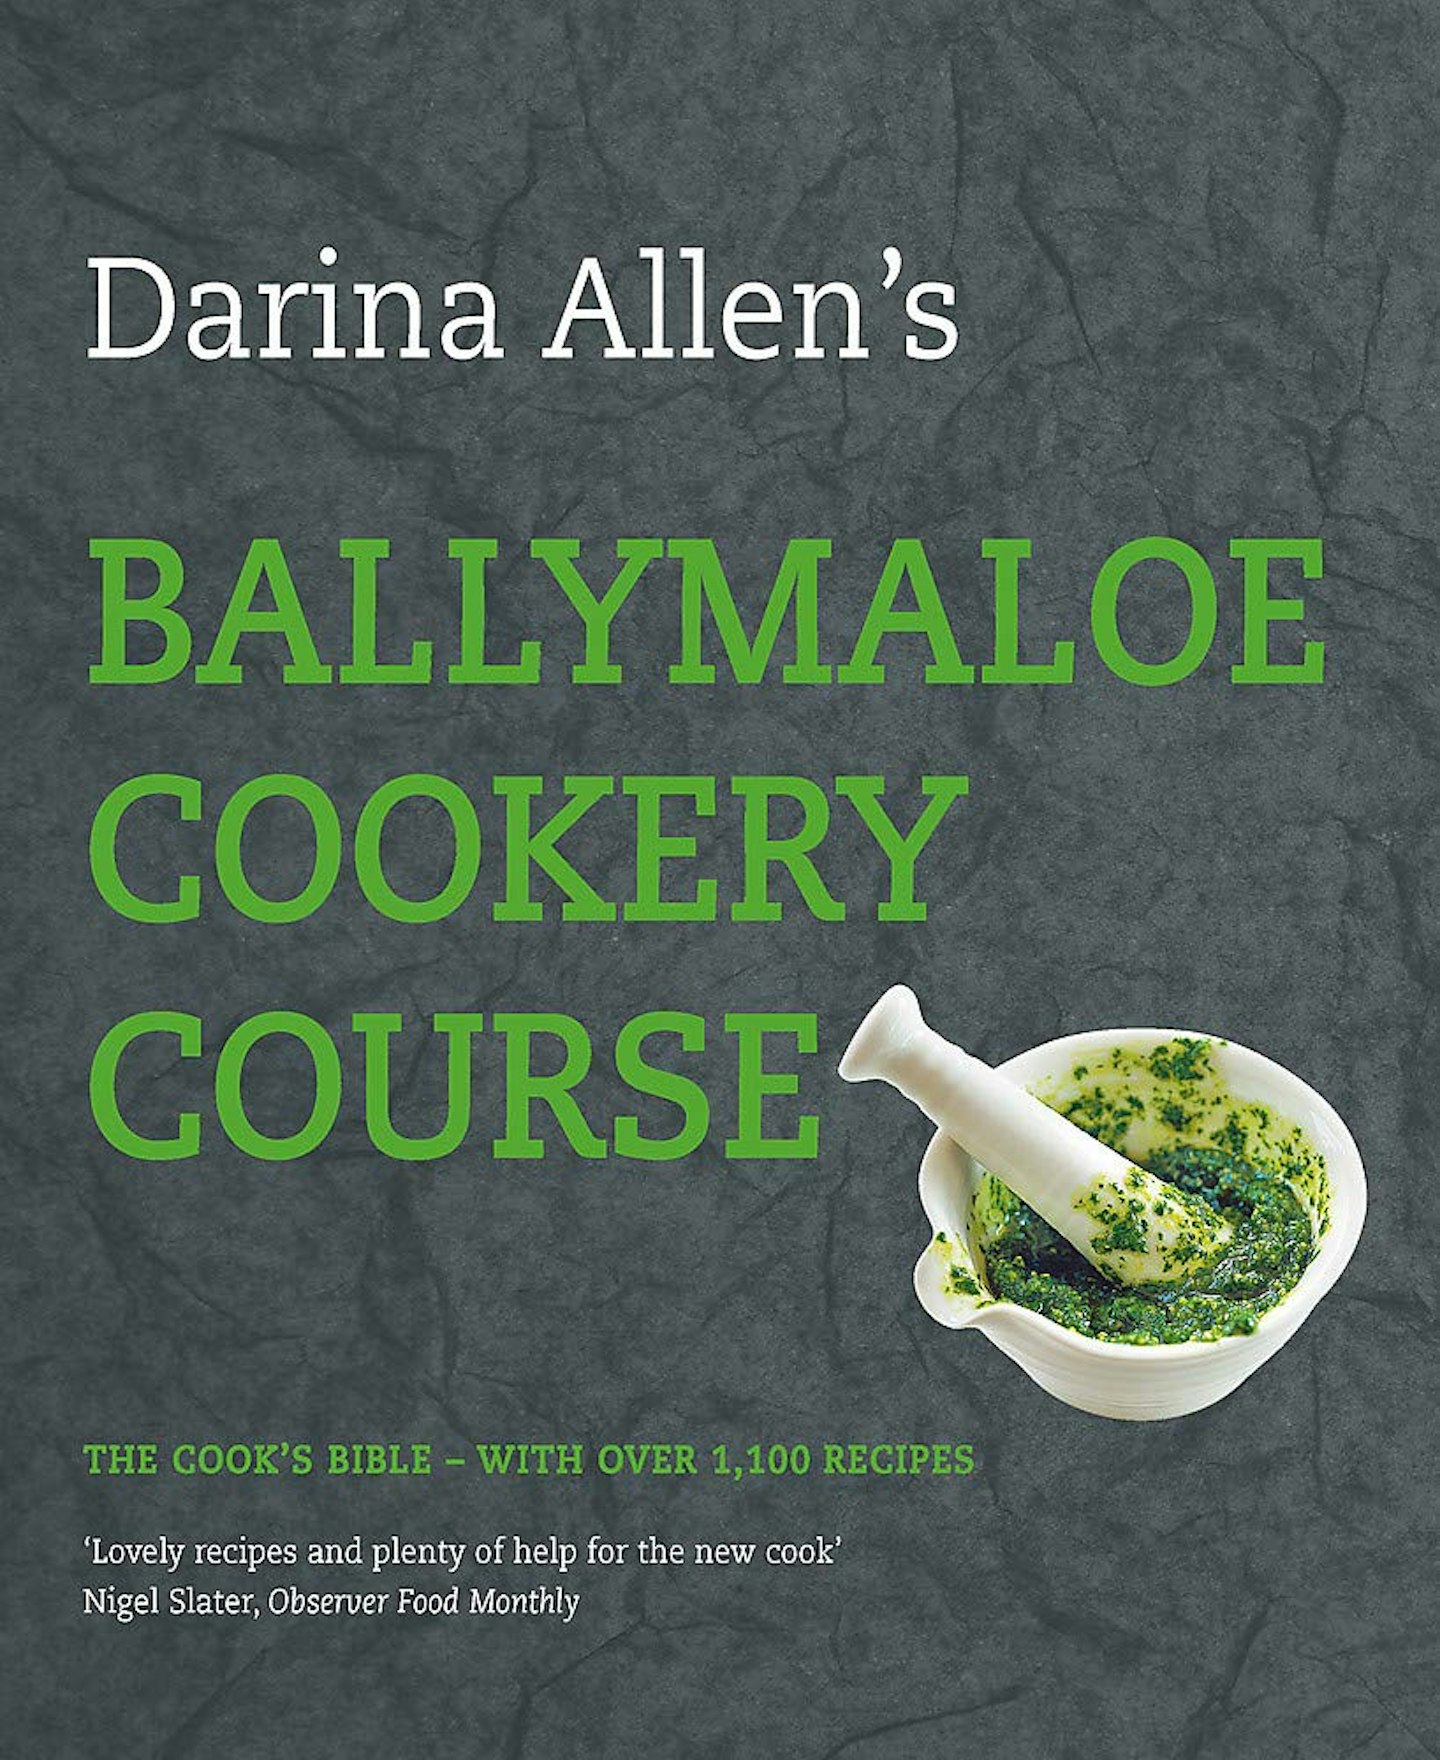 Darina Allen's Ballymaloe Cookery Course by Darina Allen